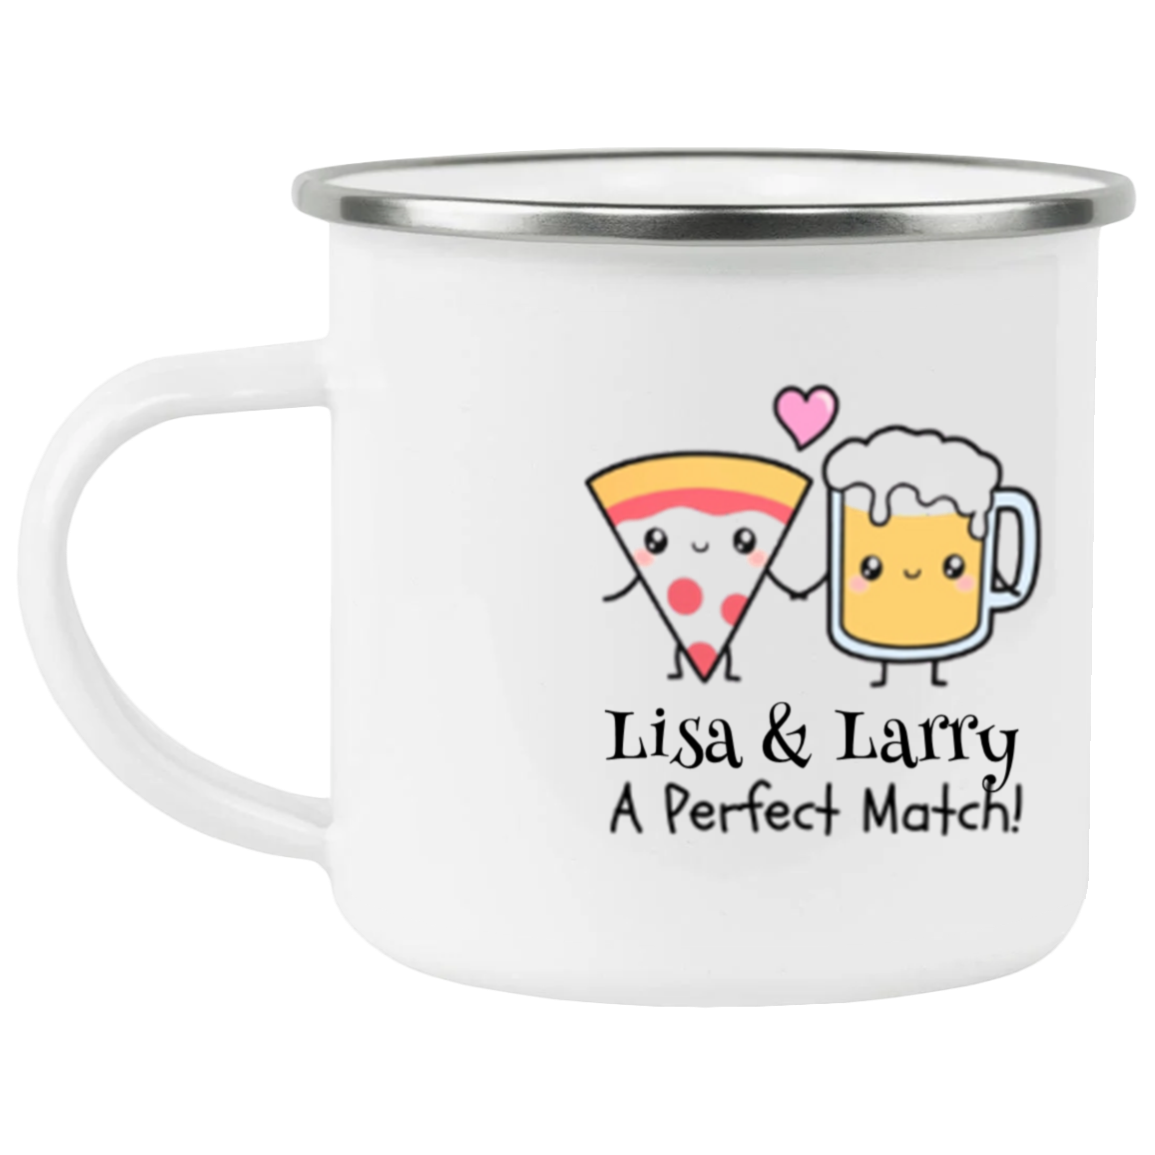 A Perfect Match Personalized Mug